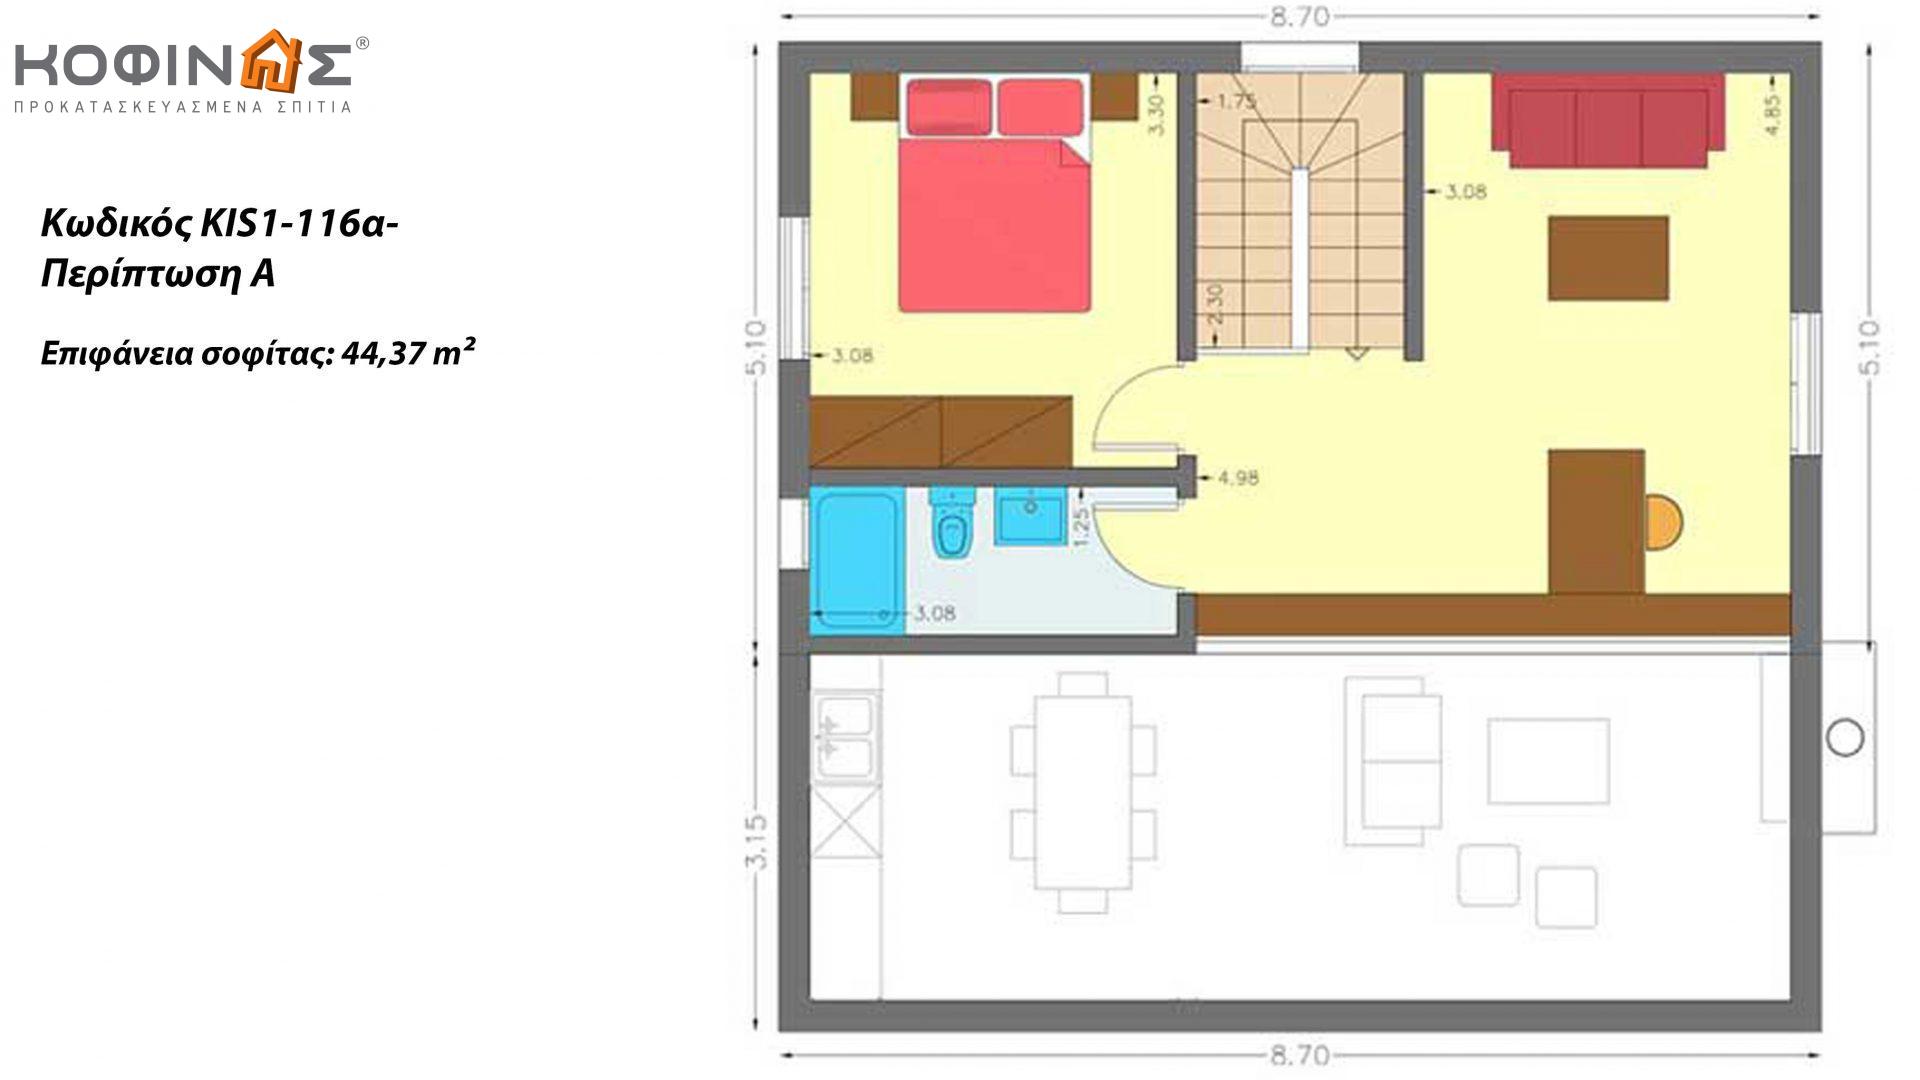 Ισόγεια Κατοικία με Σοφίτα KIS1-116α, συνολικής επιφάνειας 116,15 τ.μ. ,συνολική επιφάνεια στεγασμένων χώρων  12,30 τ.μ.